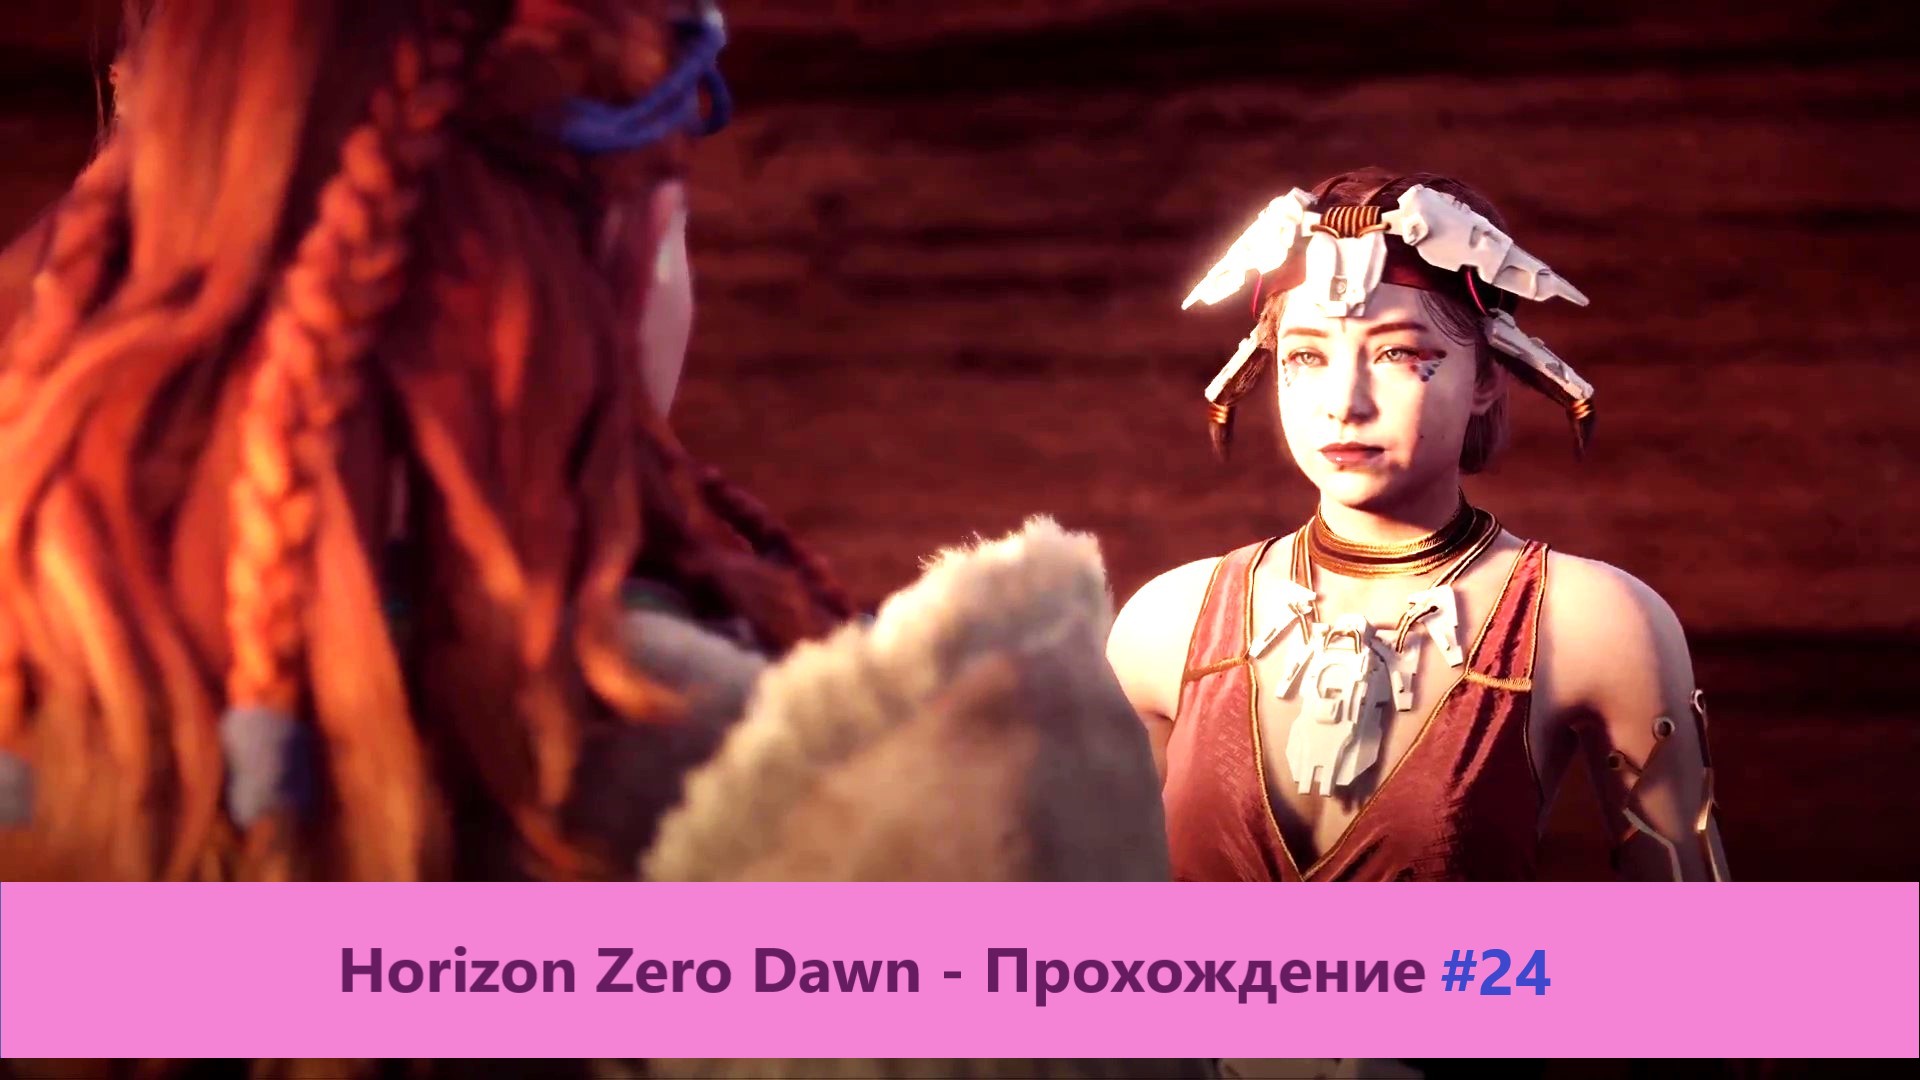 Horizon Zero Dawn - Прохождение #24